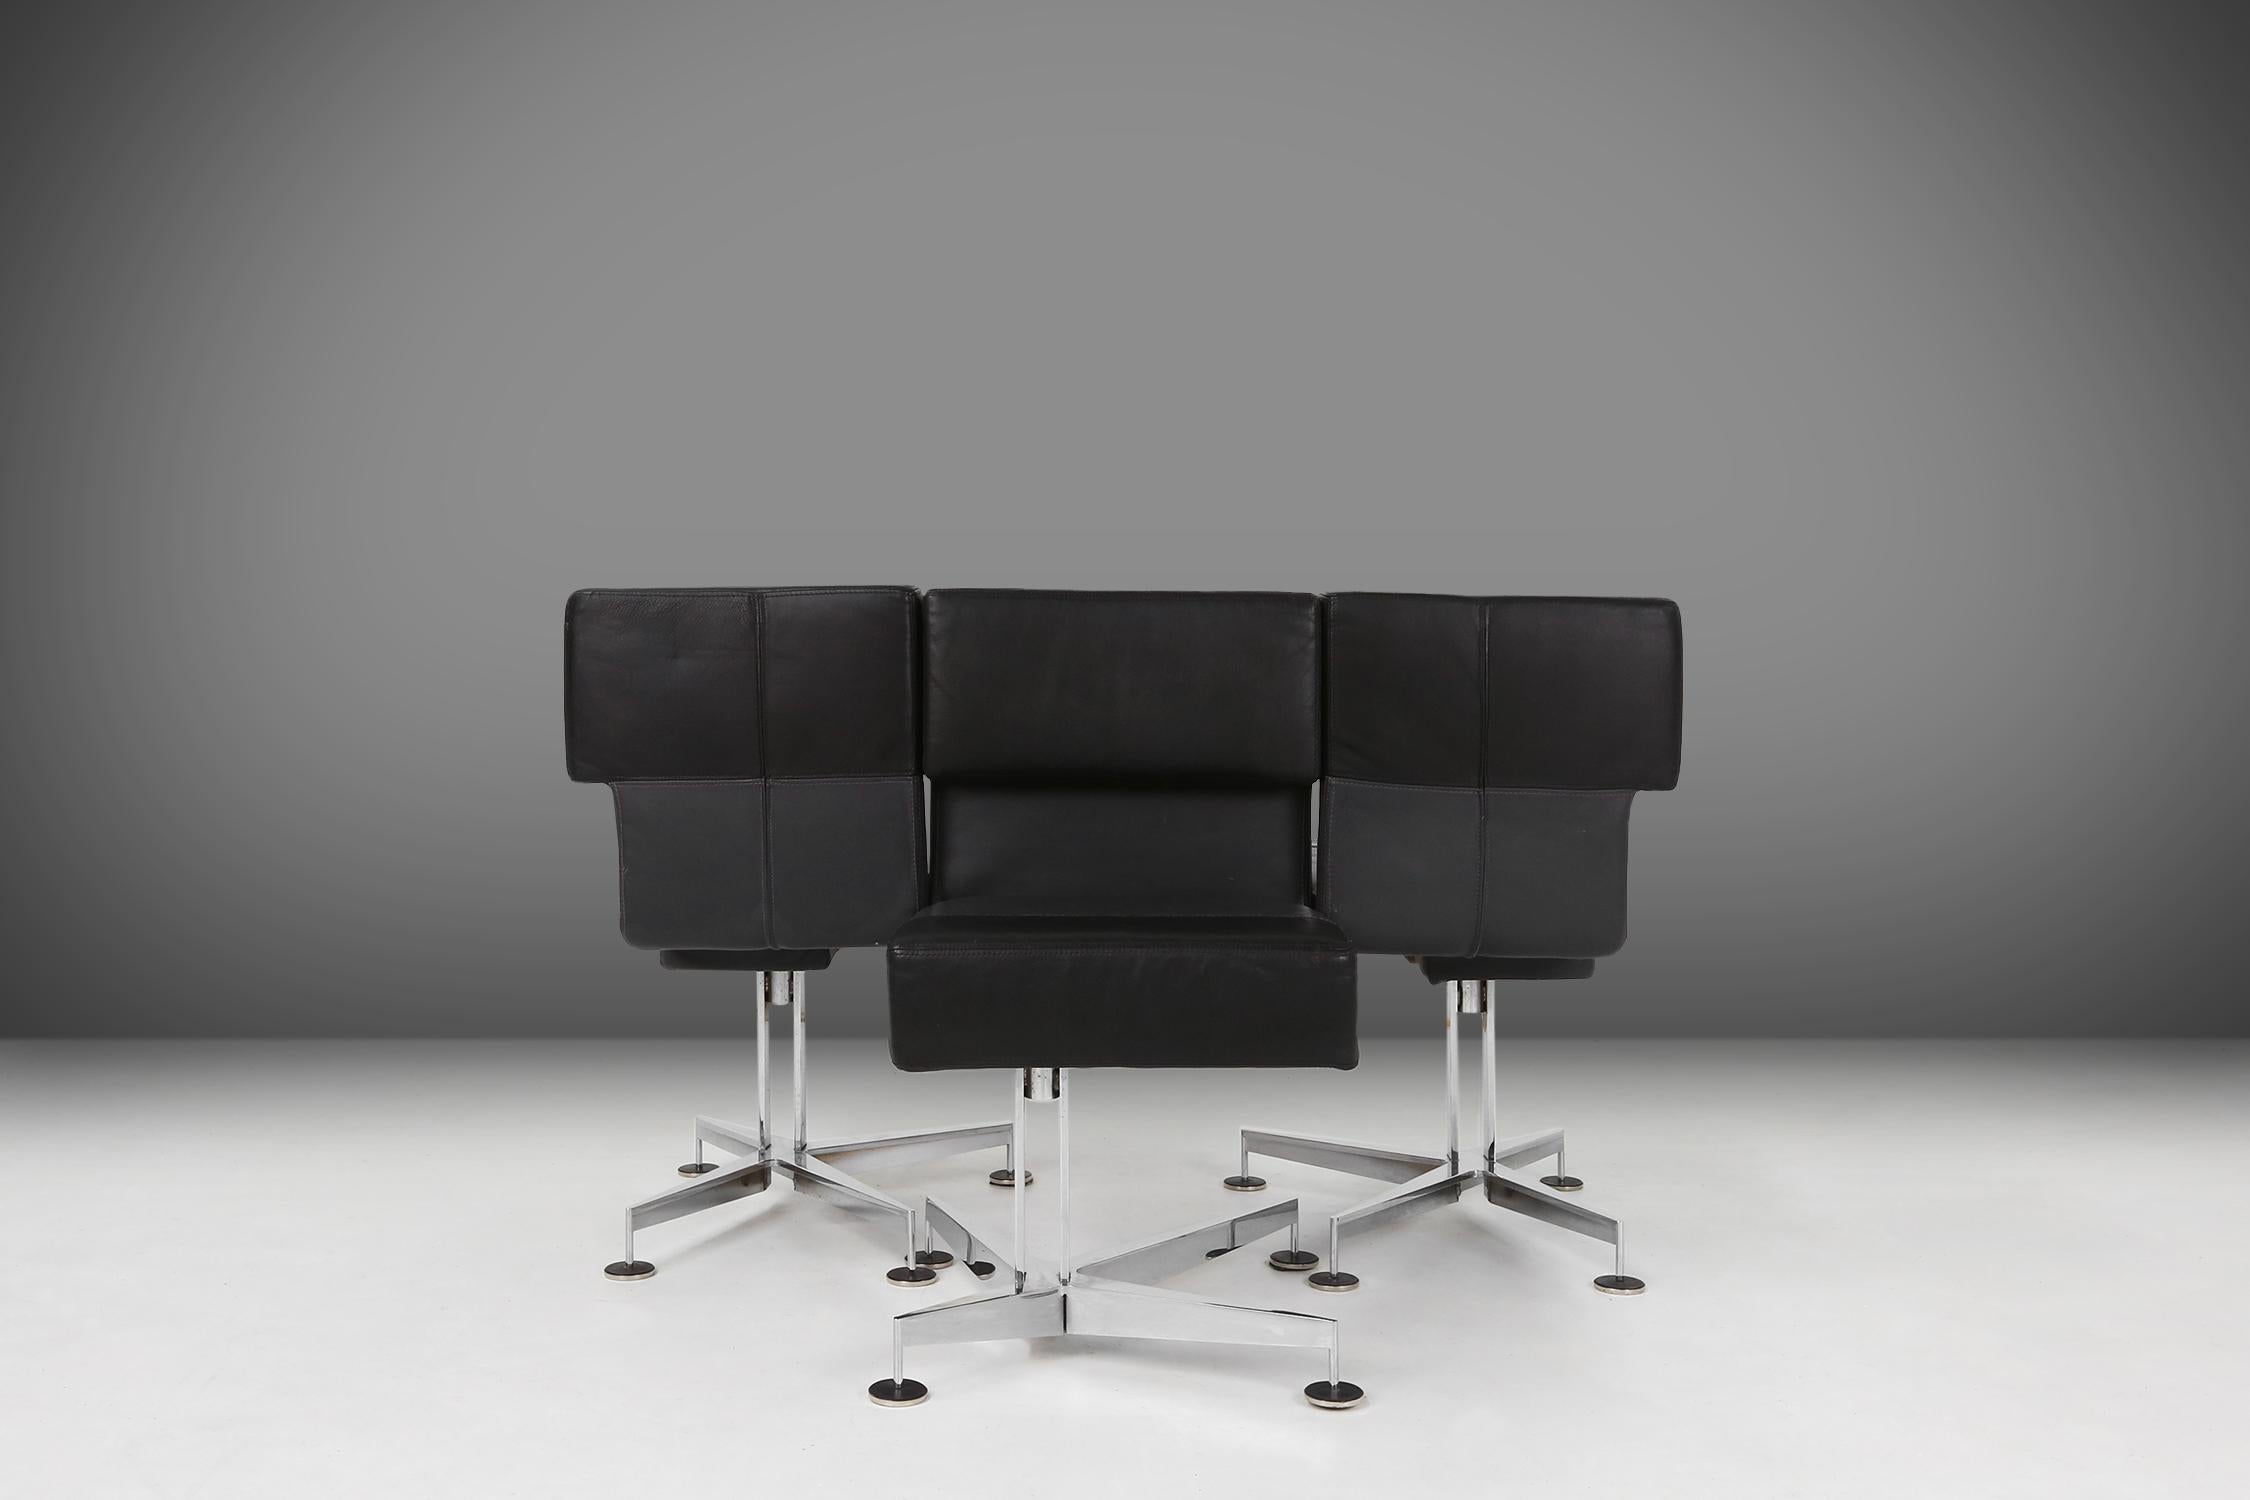 Diese 1980 von Sedus hergestellten Stühle sind ein Musterbeispiel für Qualität und Design. Sie sind aus schwarzem und grauem Leder gefertigt, was ihnen ein luxuriöses und komfortables Aussehen verleiht. Das schwere, verchromte Metallgestell sorgt